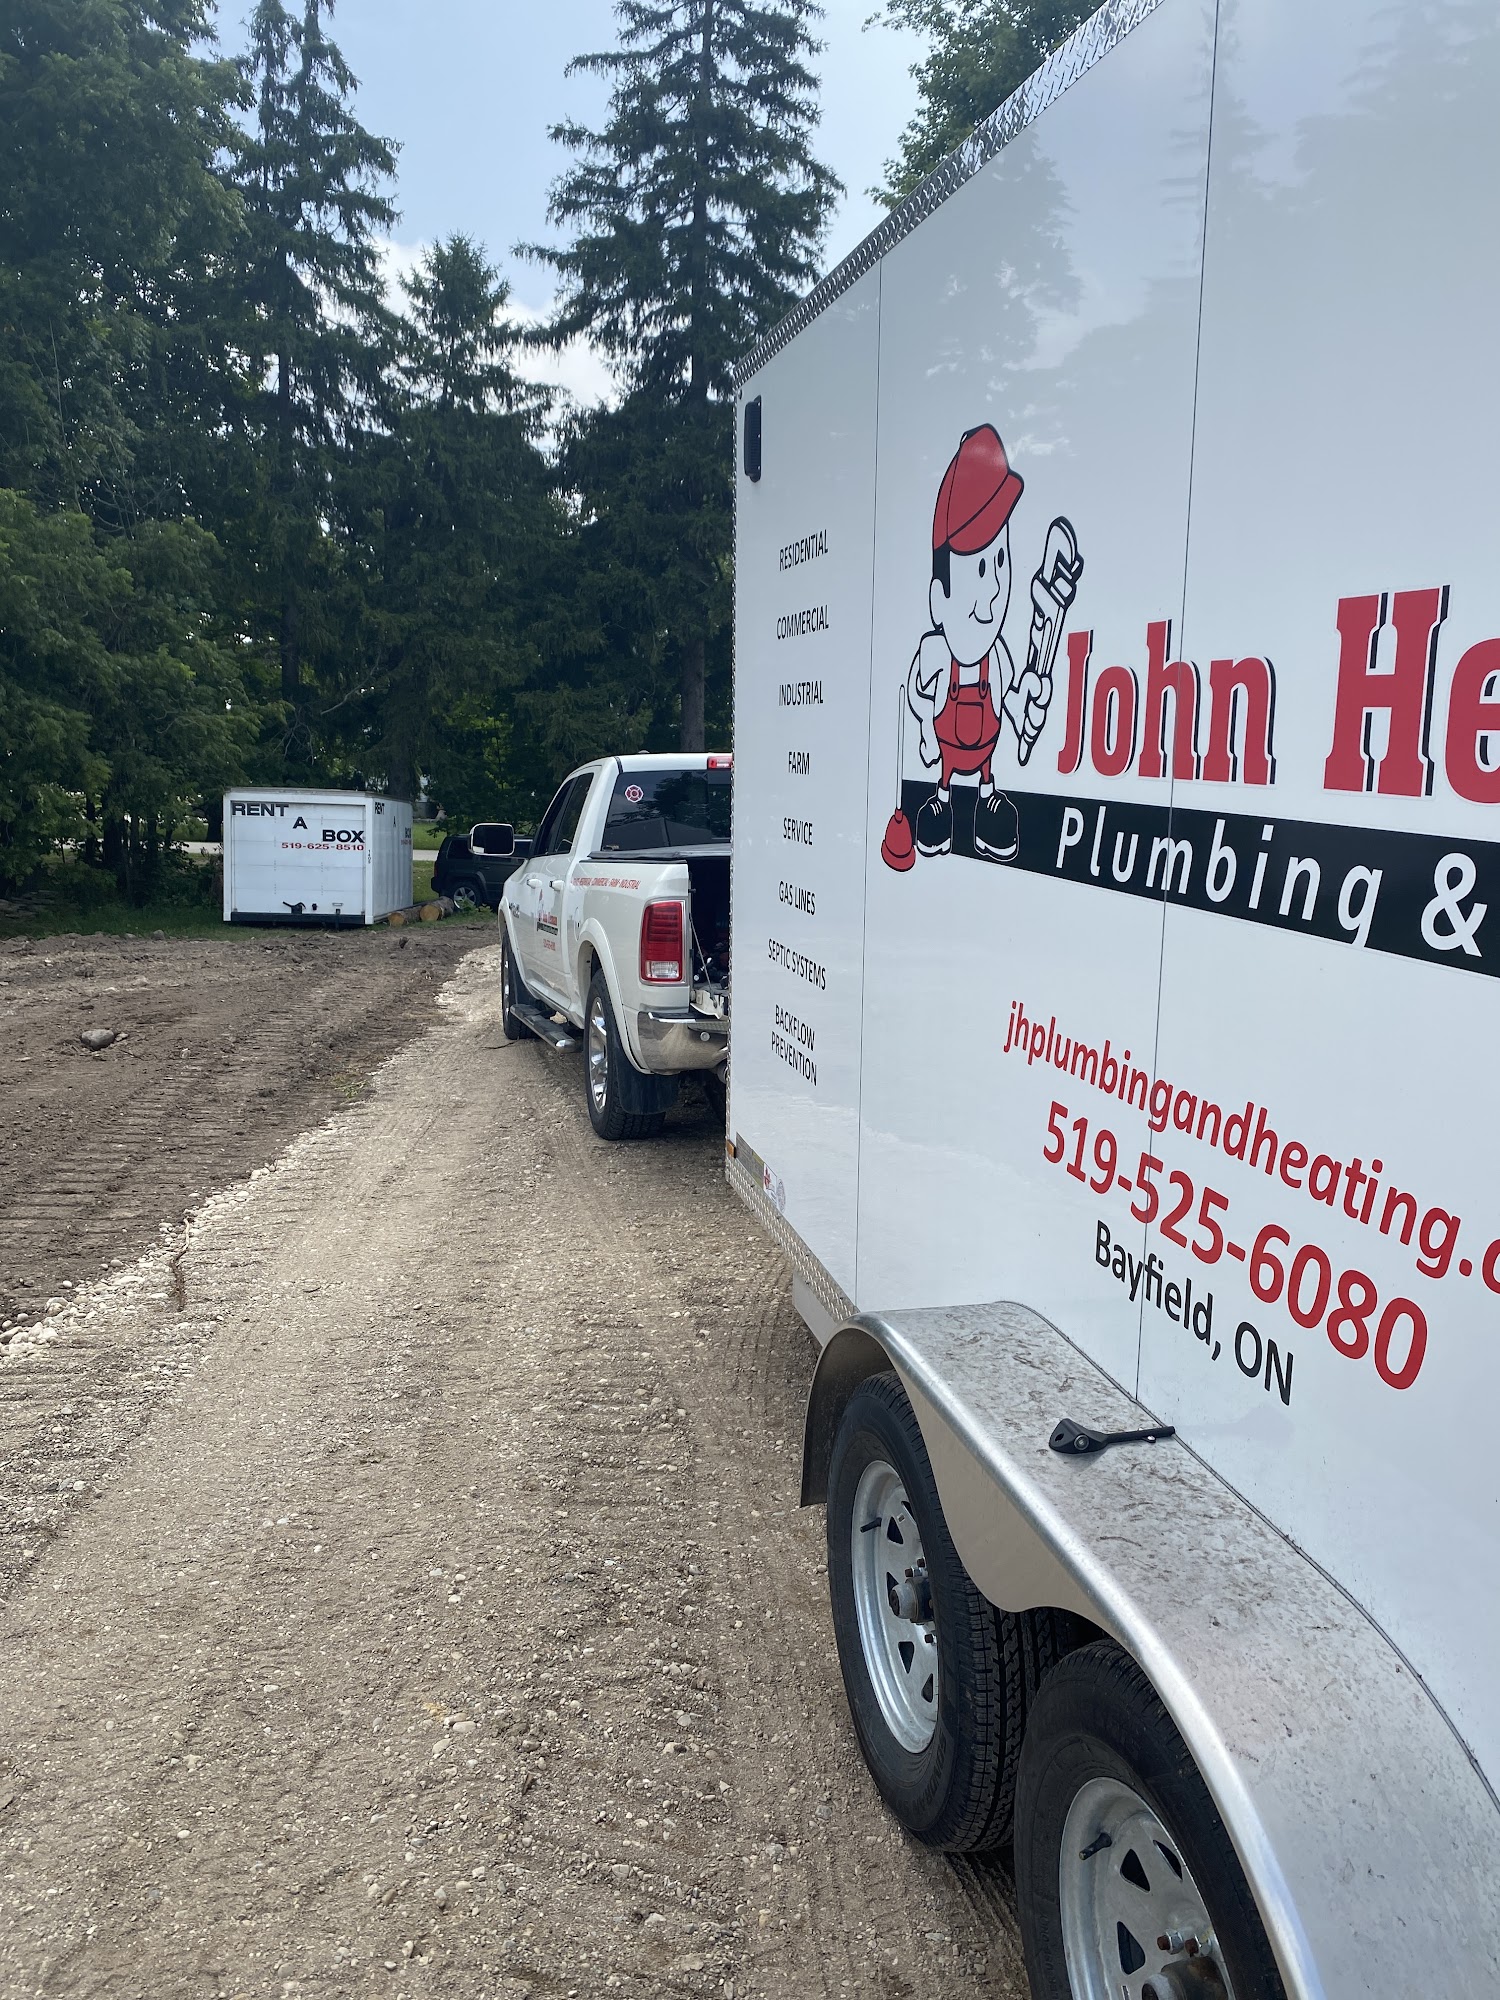 John Herman Plumbing & Heating 74329 Driftwood Dr, Bayfield Ontario N0M 1G0